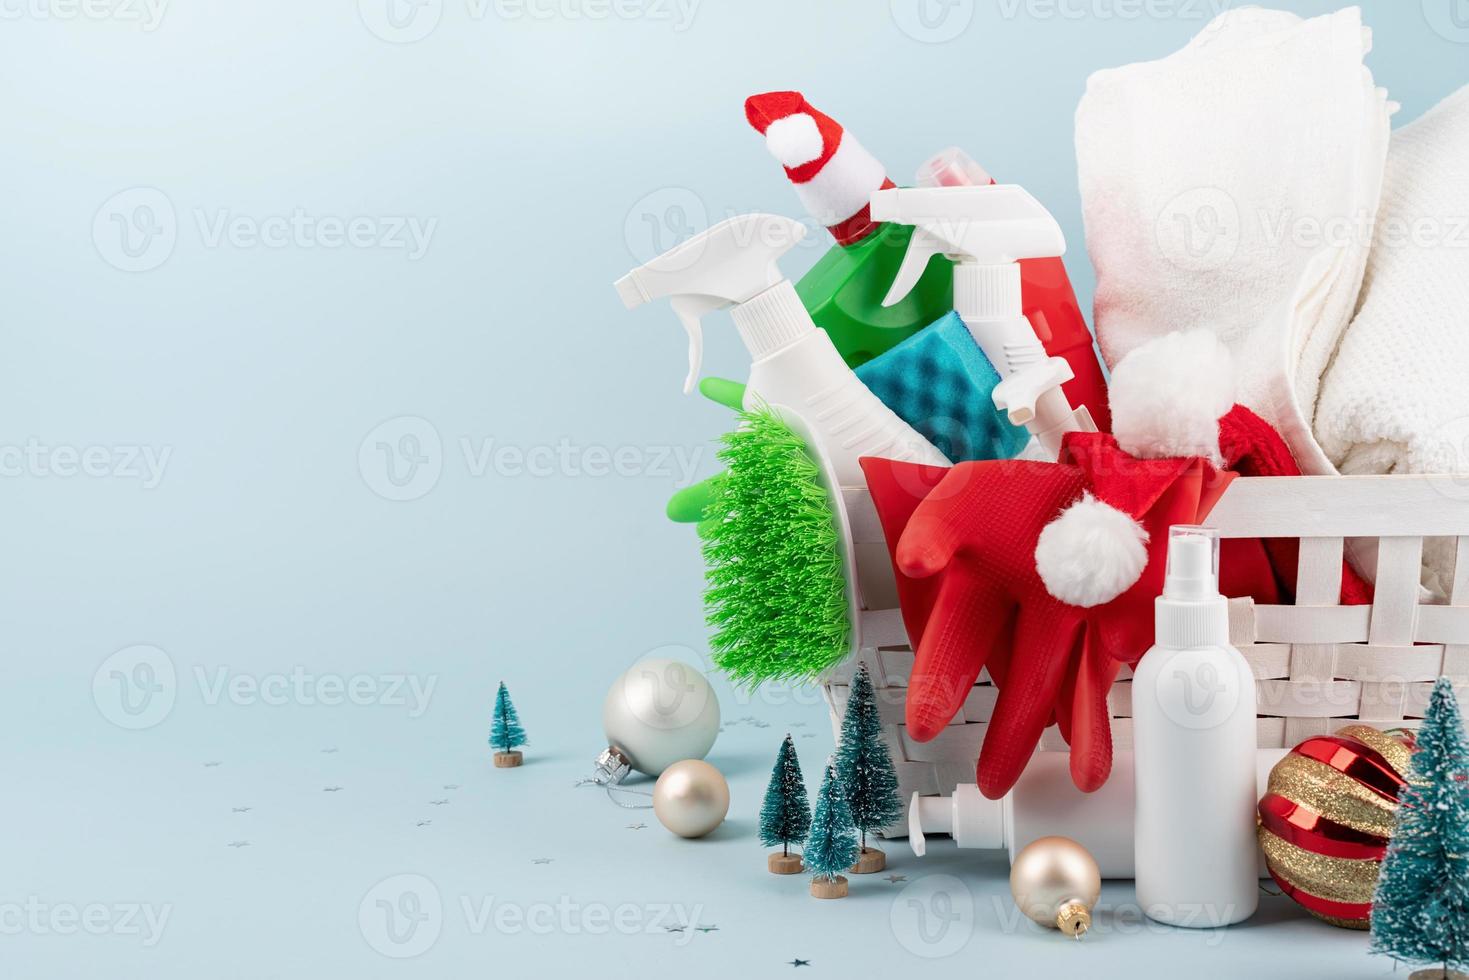 herramientas de limpieza y adornos navideños en una cesta de ropa blanca sobre fondo azul con espacio para copiar foto